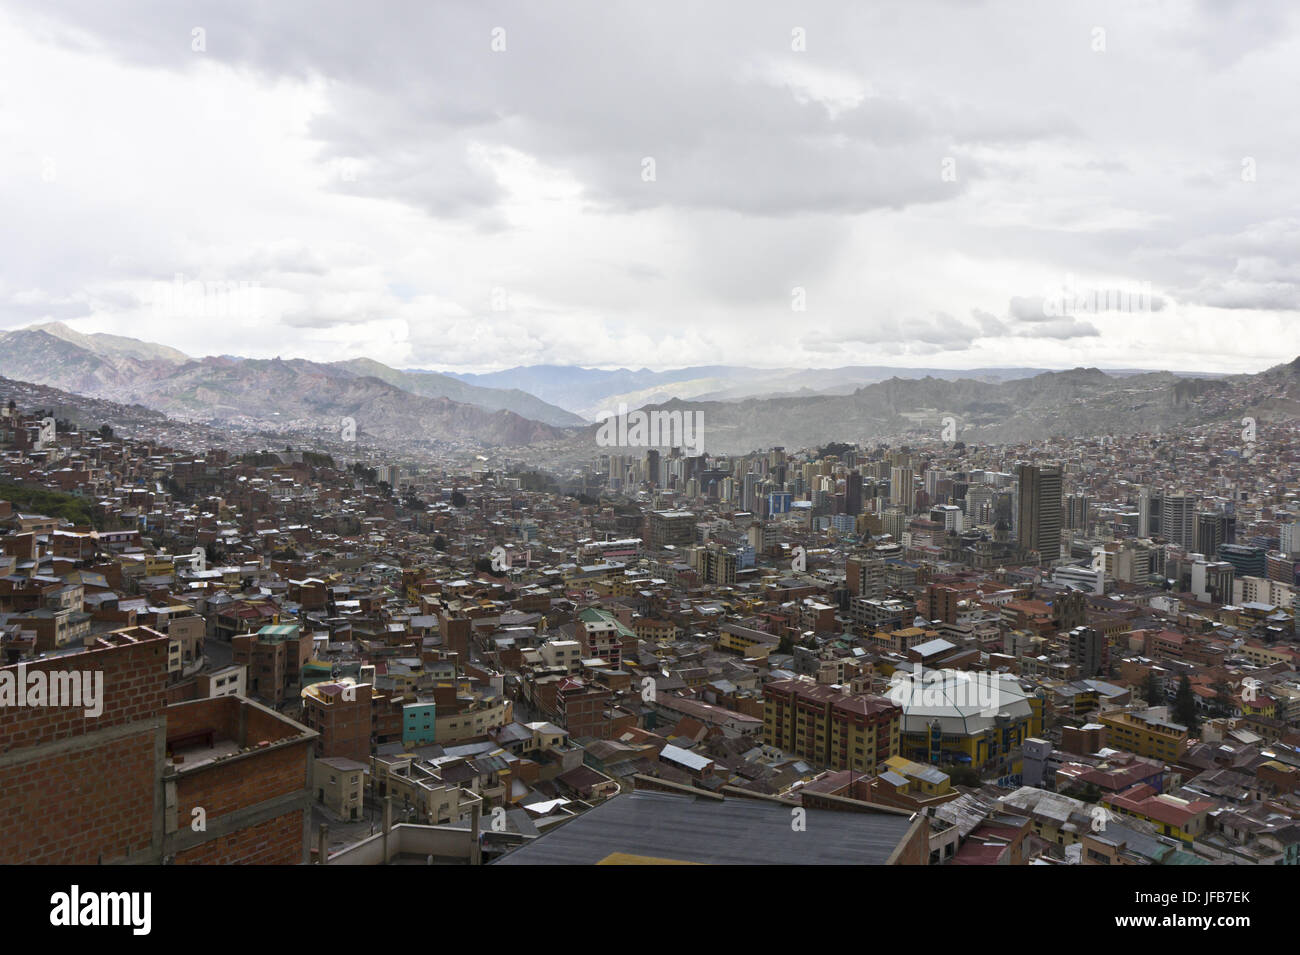 La Paz, Bolivie, Amérique du Sud Banque D'Images